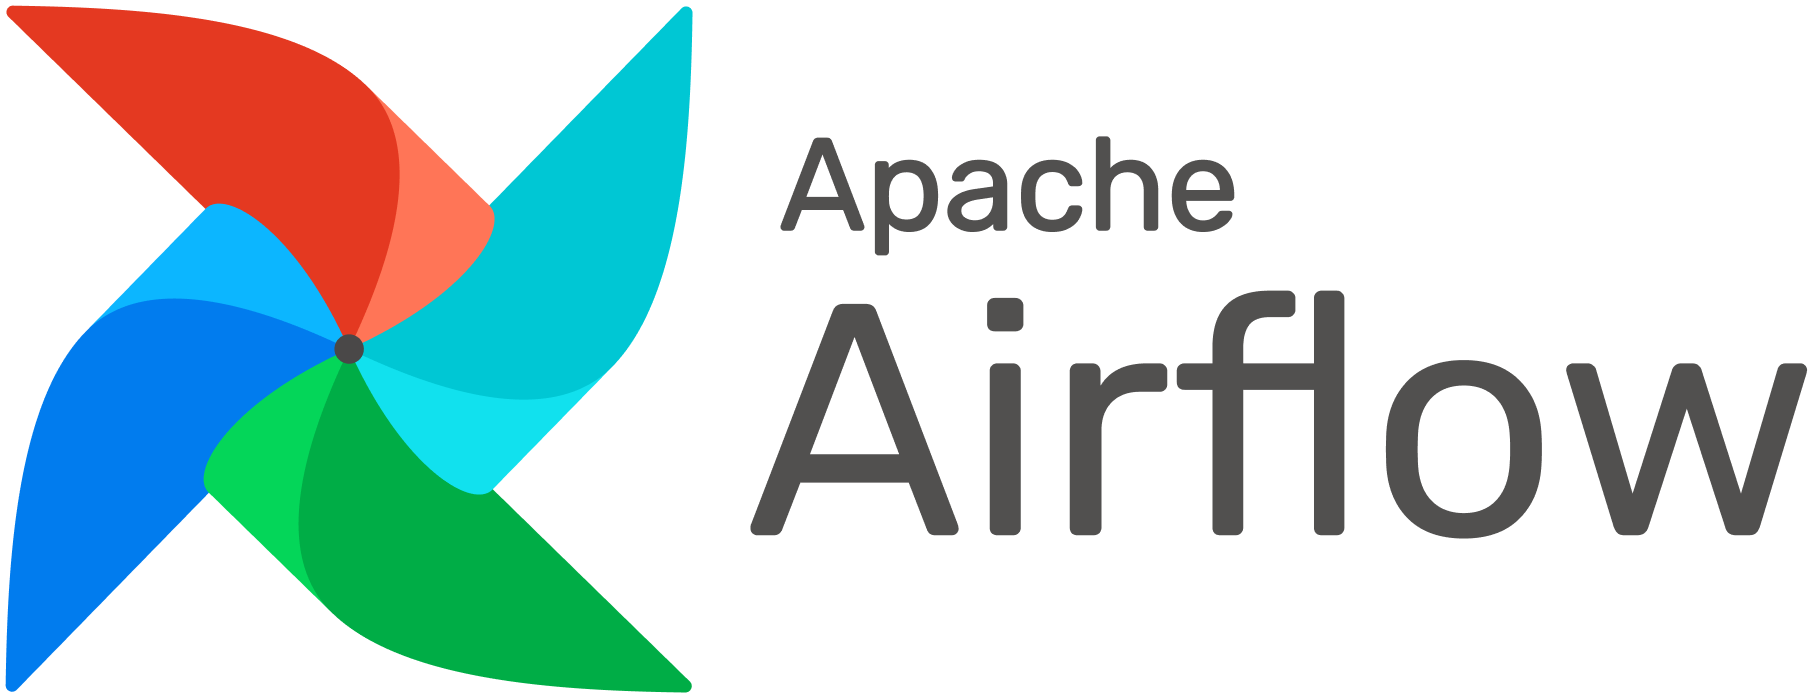 Airflow Logo